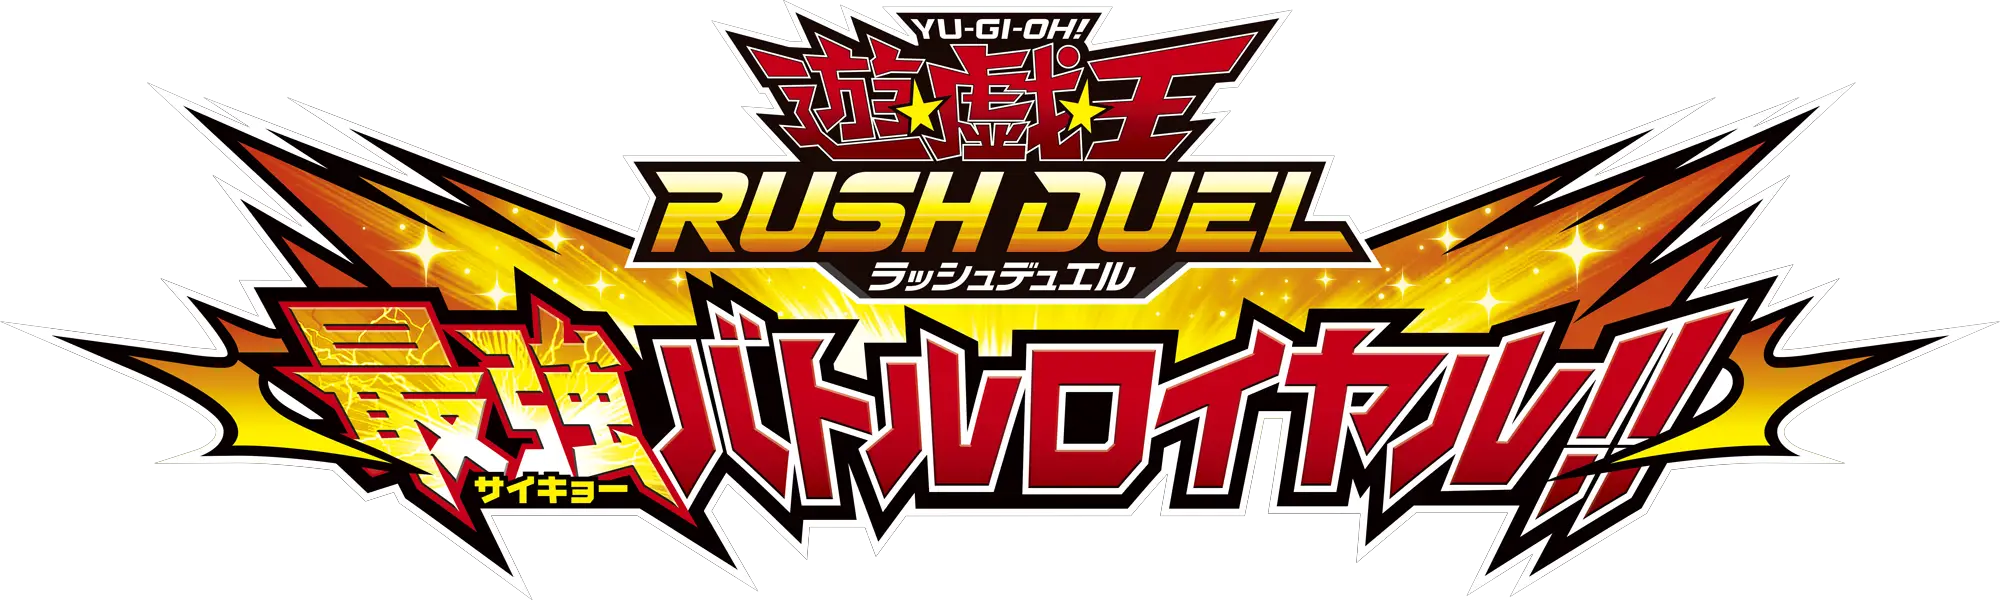 Yugioh Yu-gi-oh Rush Duel 10 amiibo Card pack set Saikyo Battle Royale Japanese 